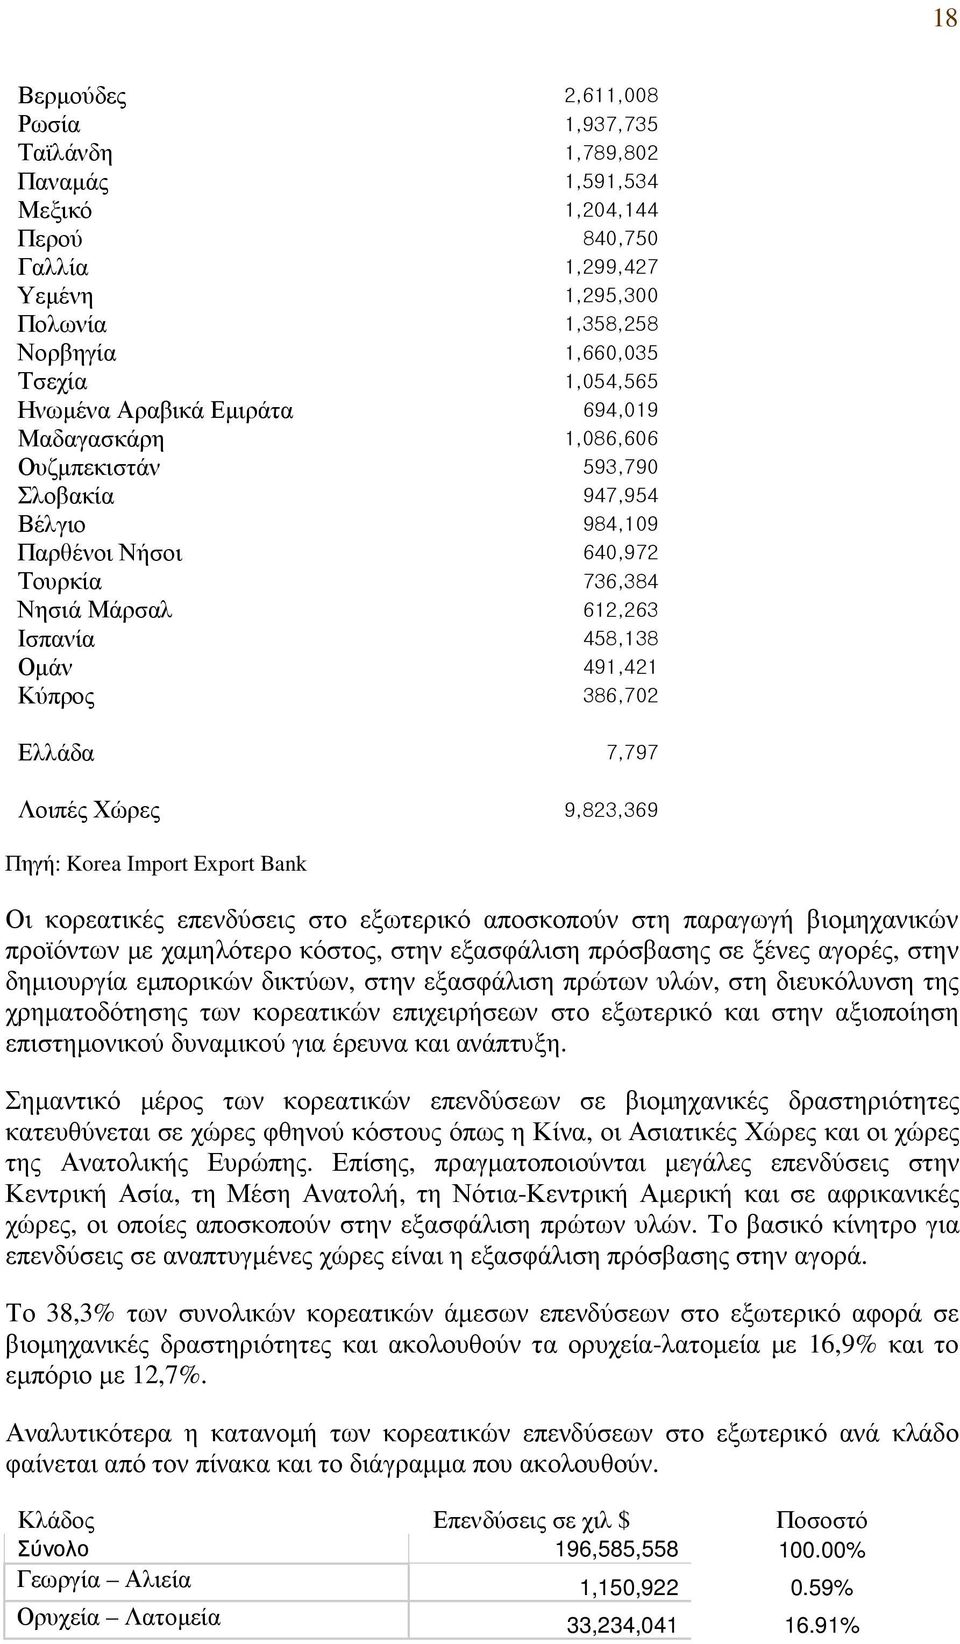 Κύπρος 386,702 Ελλάδα 7,797 Λοιπές Χώρες 9,823,369 Πηγή: Korea Import Export Bank Οι κορεατικές επενδύσεις στο εξωτερικό αποσκοπούν στη παραγωγή βιοµηχανικών προϊόντων µε χαµηλότερο κόστος, στην